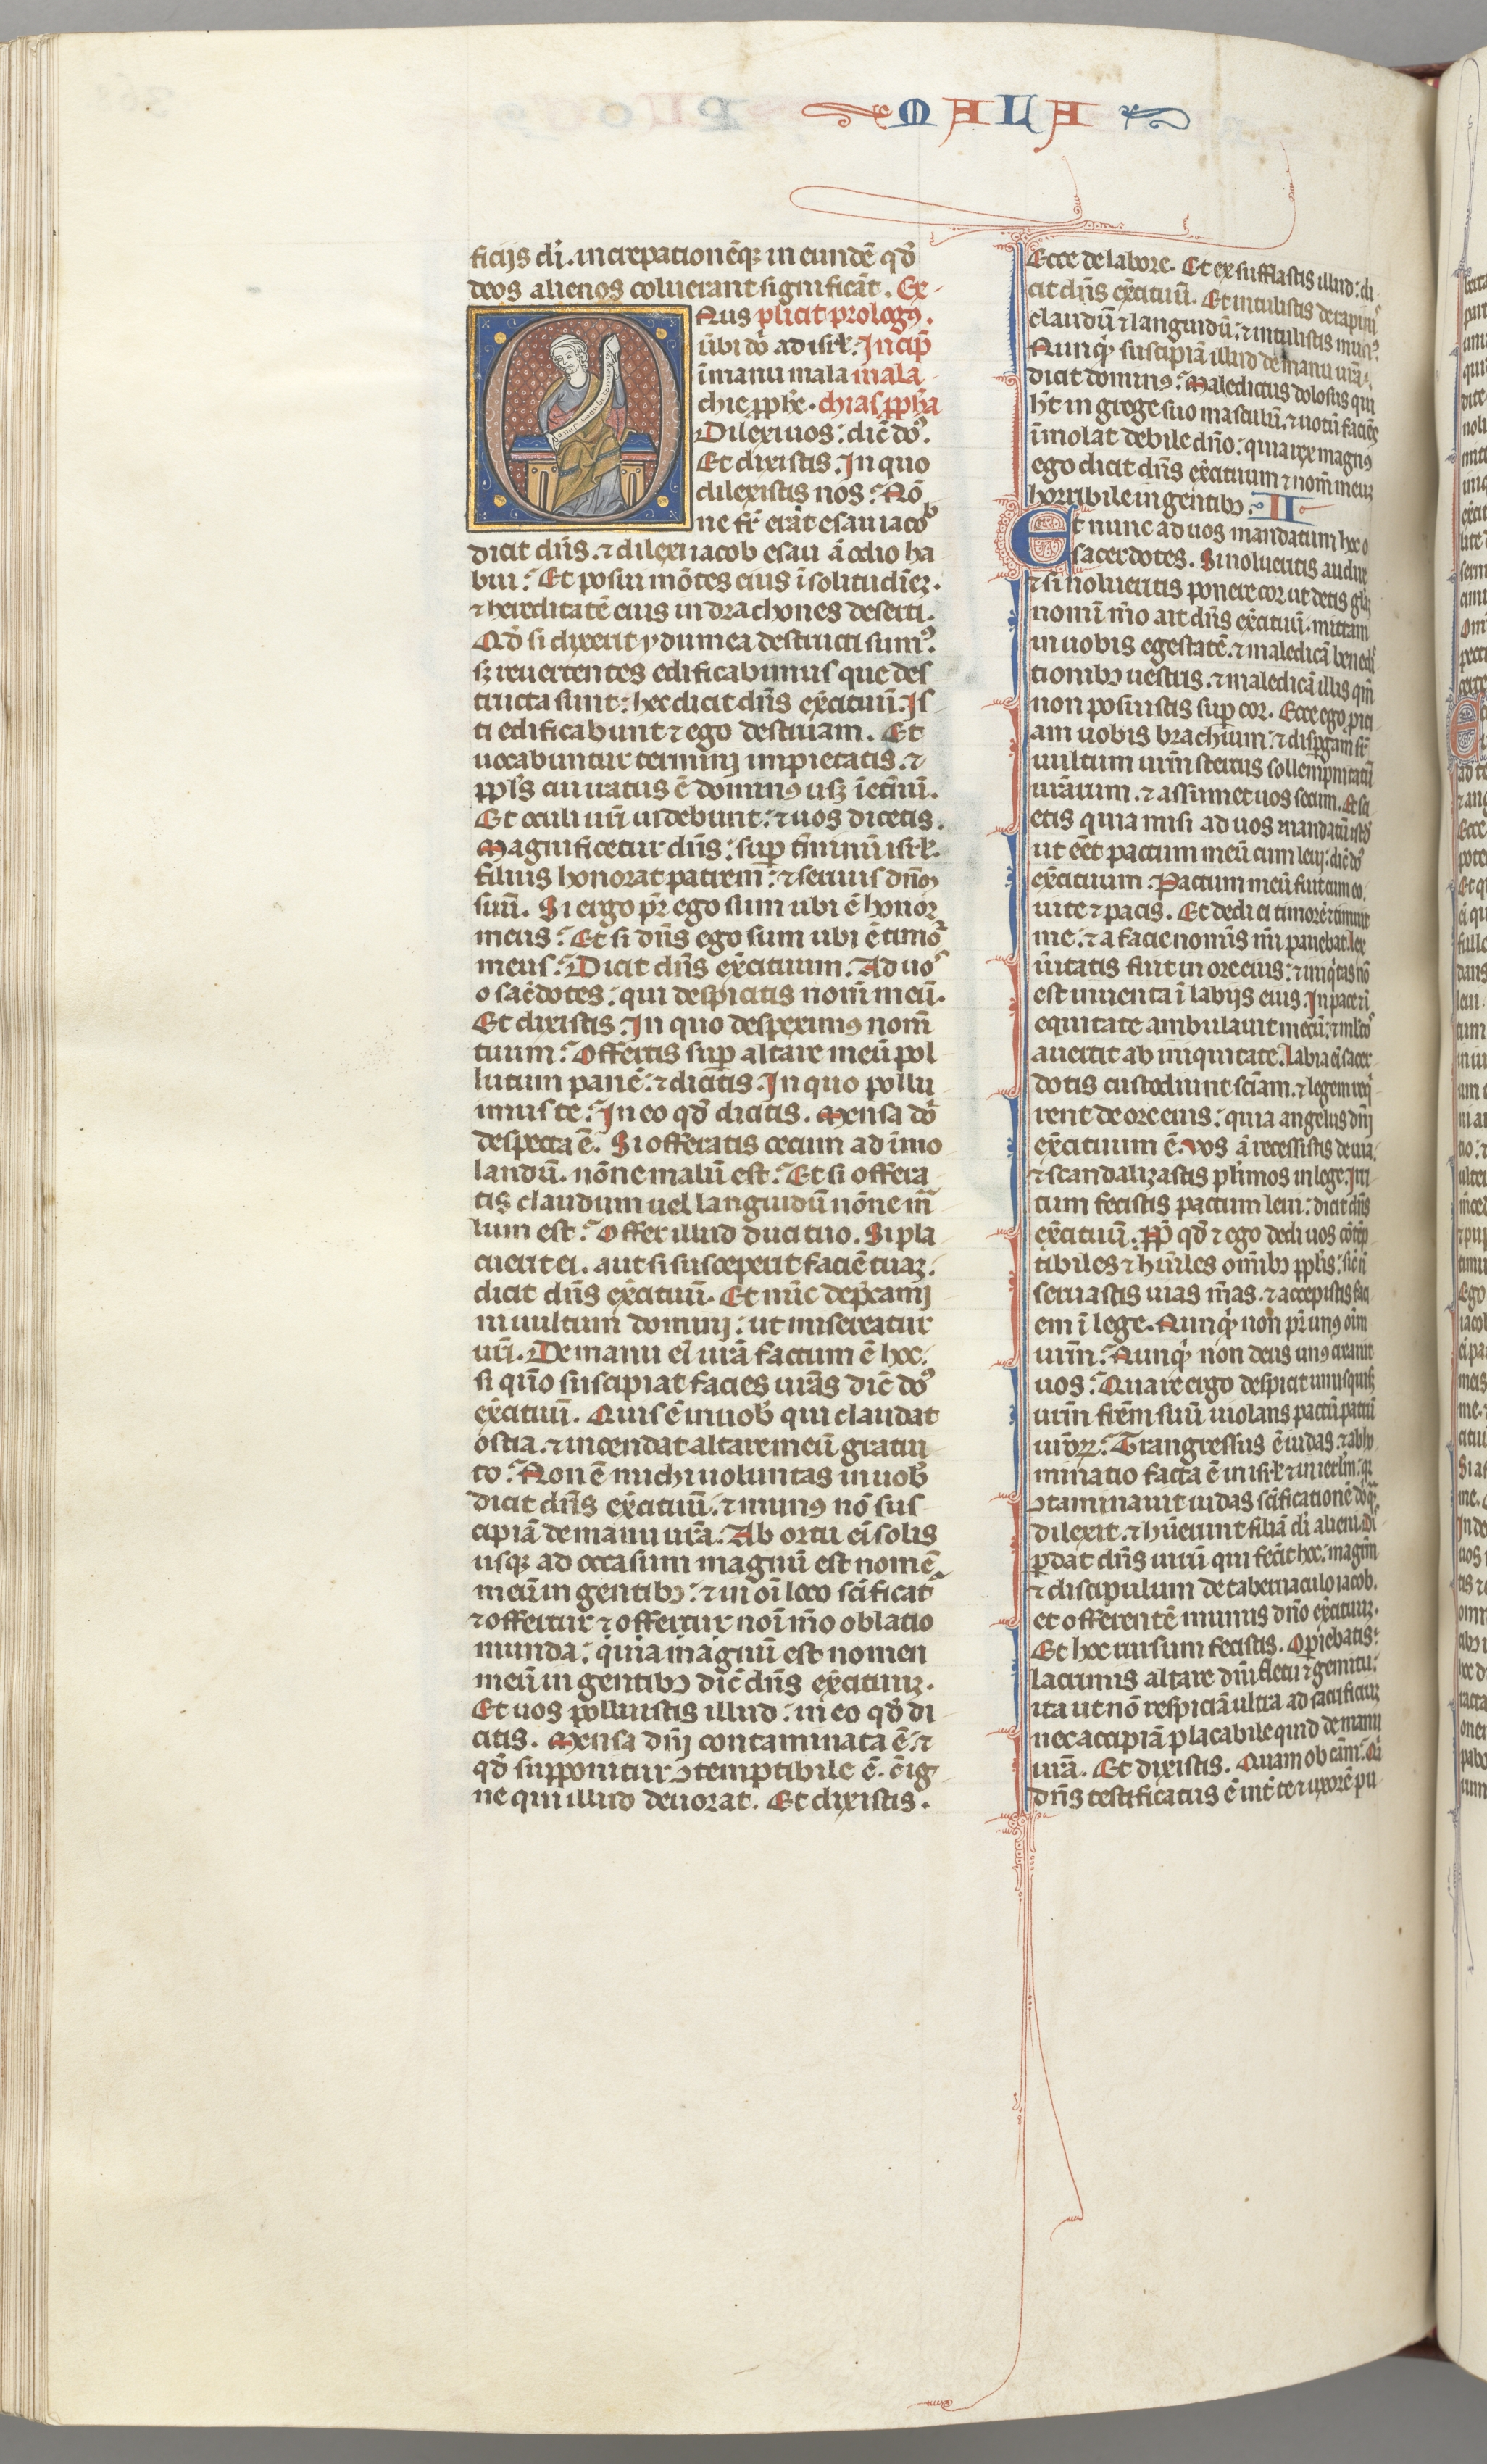 Fol. 368v, Malachi, historiated initial O, Malachi seated with a scroll